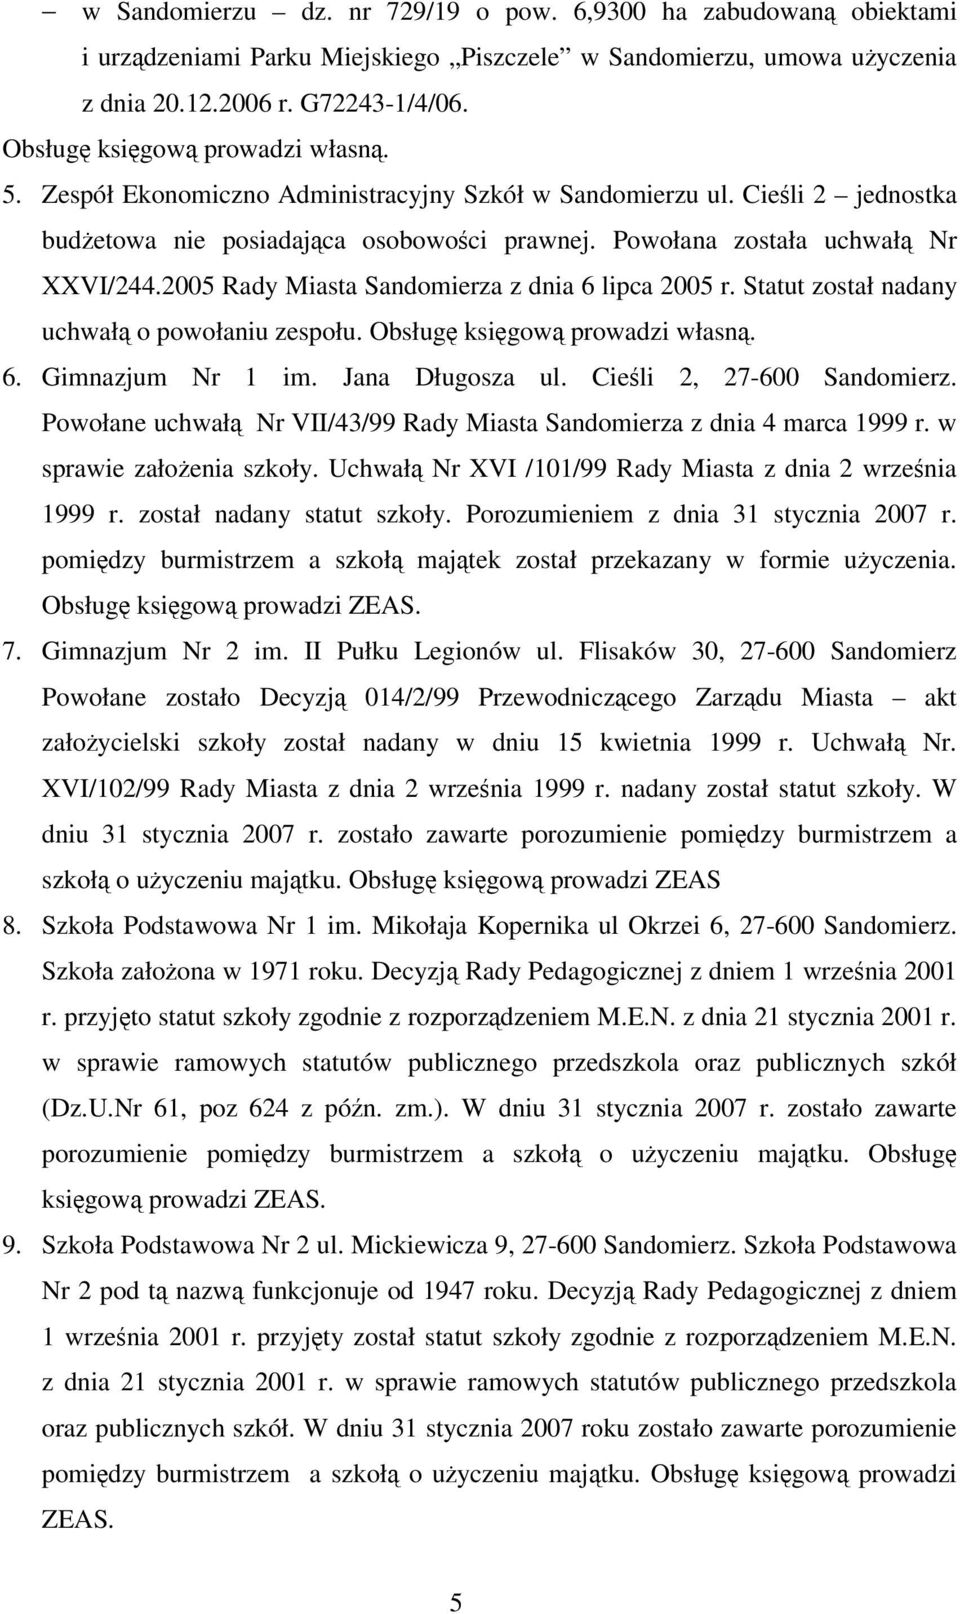 2005 Rady Miasta Sandomierza z dnia 6 lipca 2005 r. Statut został nadany uchwał o powołaniu zespołu. Obsług ksigow prowadzi własn. 6. Gimnazjum Nr 1 im. Jana Długosza ul. Cieli 2, 27-600 Sandomierz.